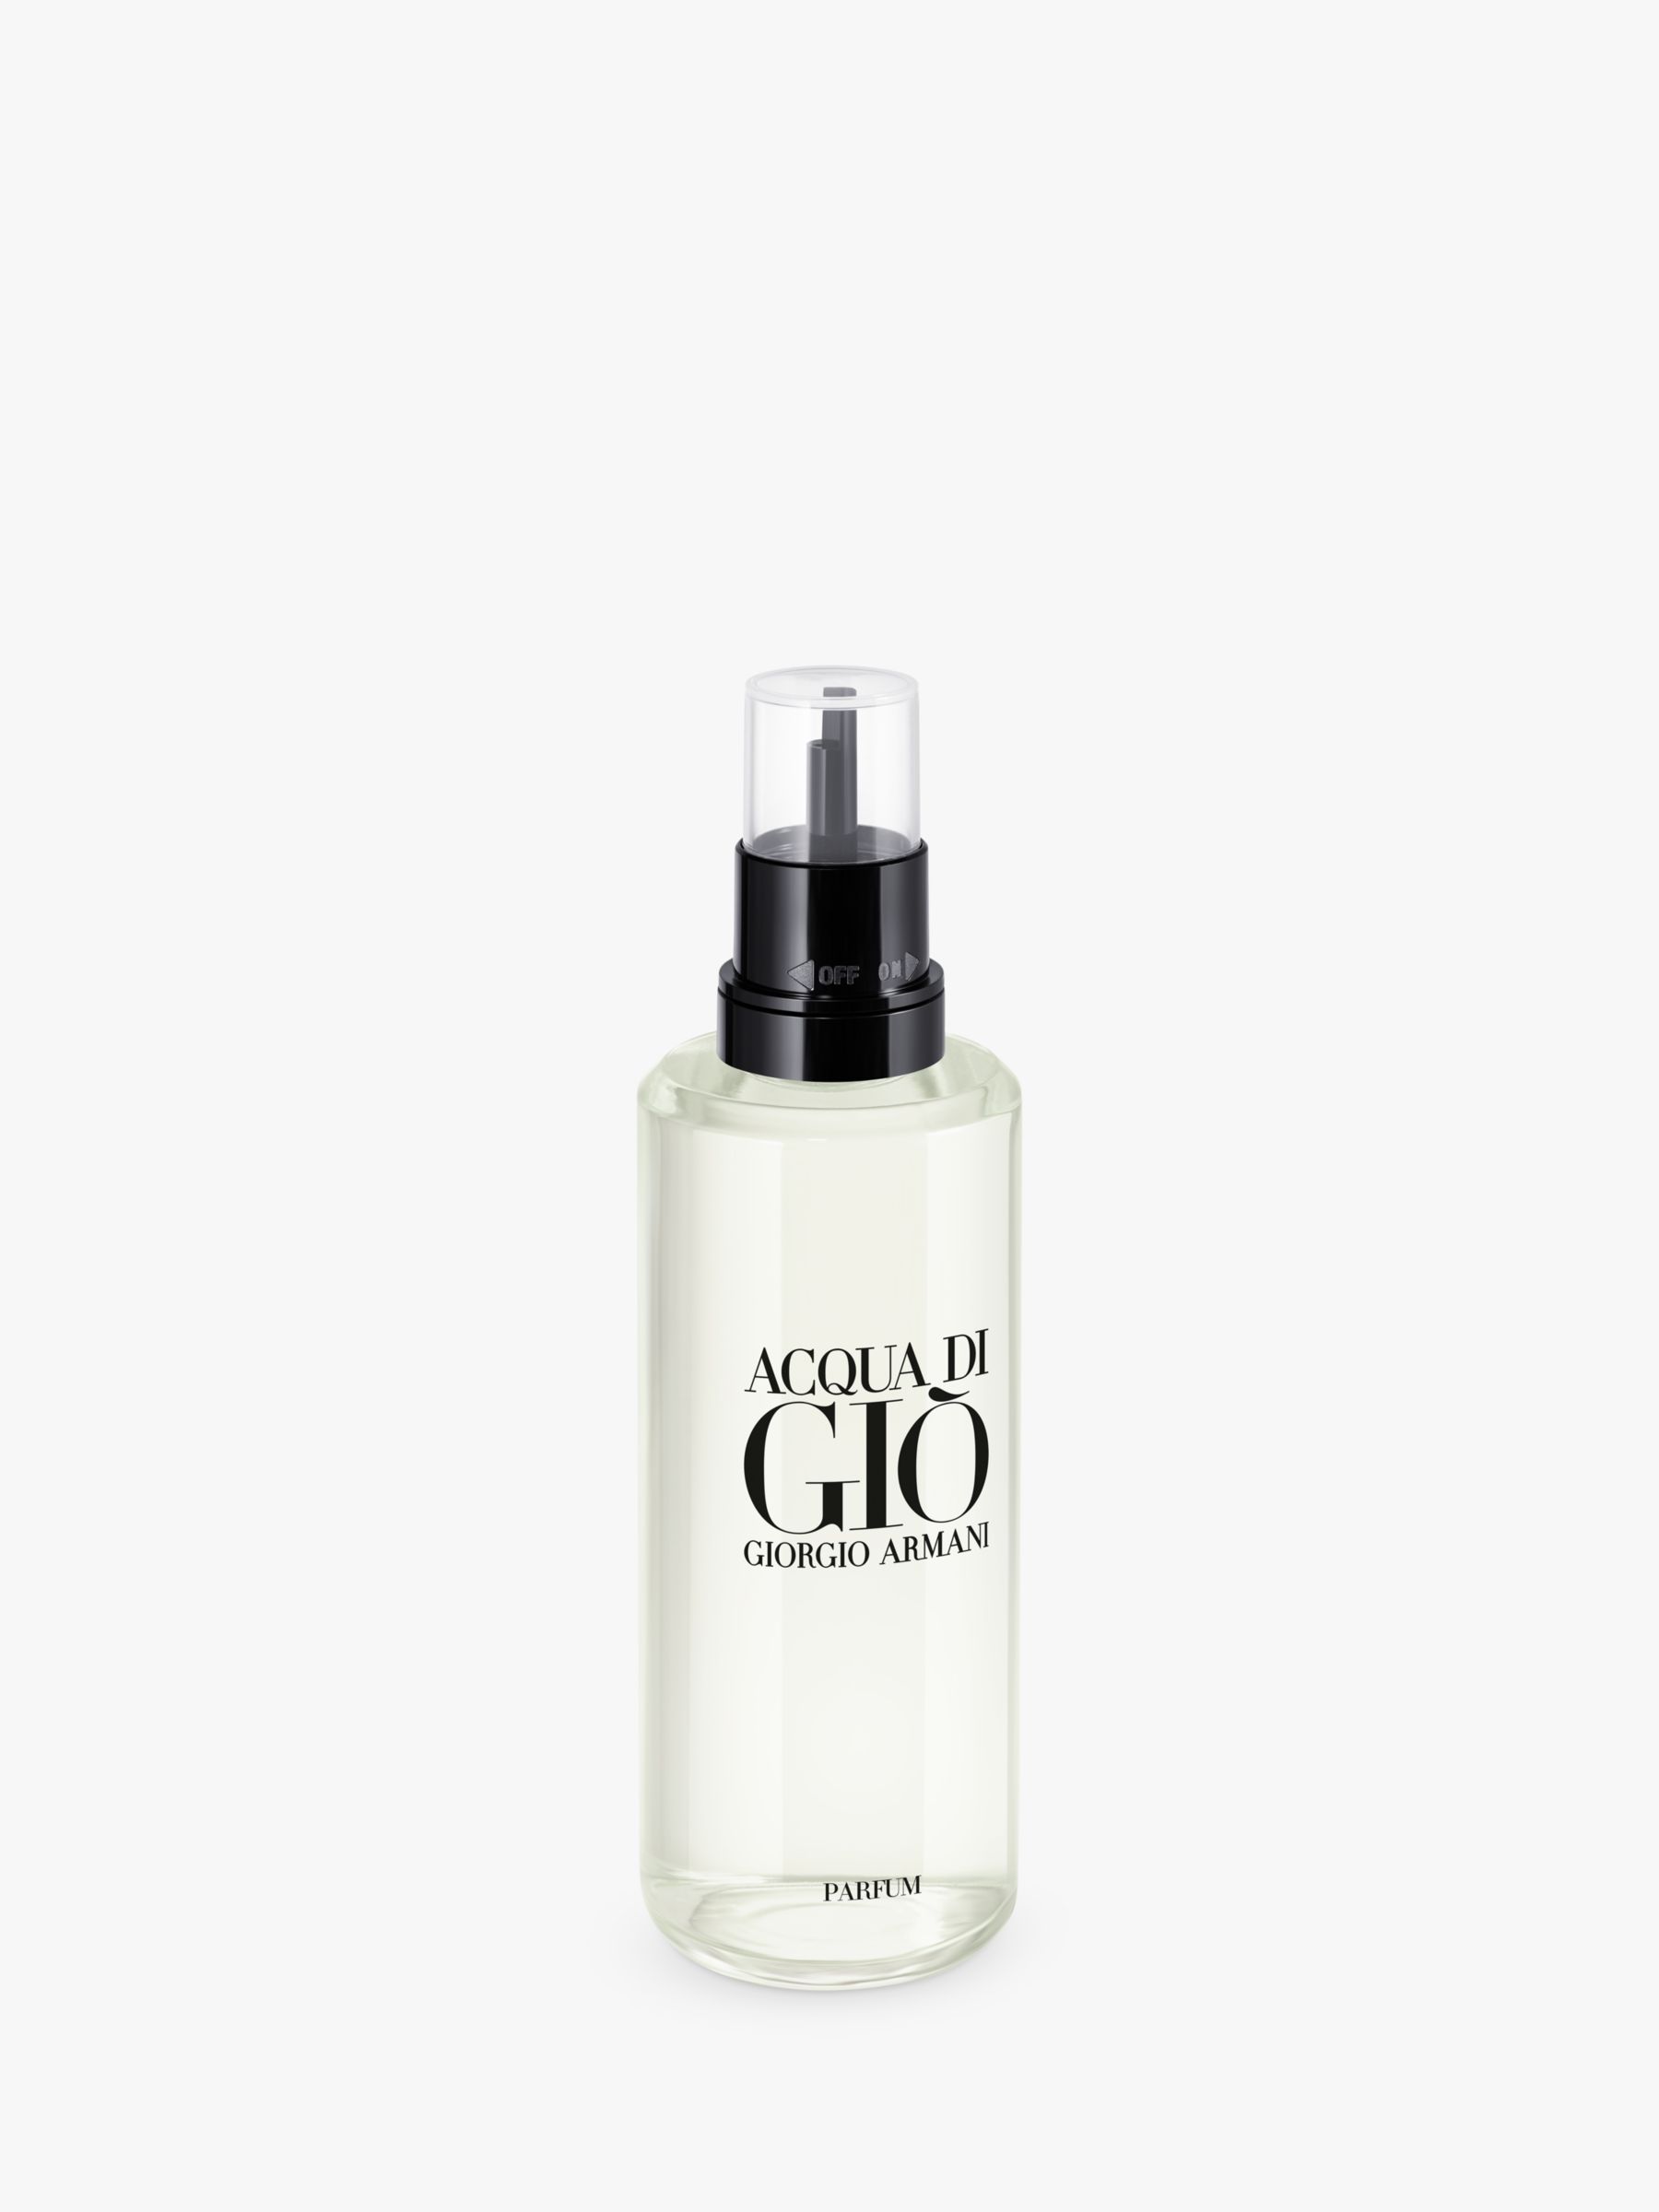 Giorgio Armani Acqua di Giò Homme Parfum Refill, 150ml 3